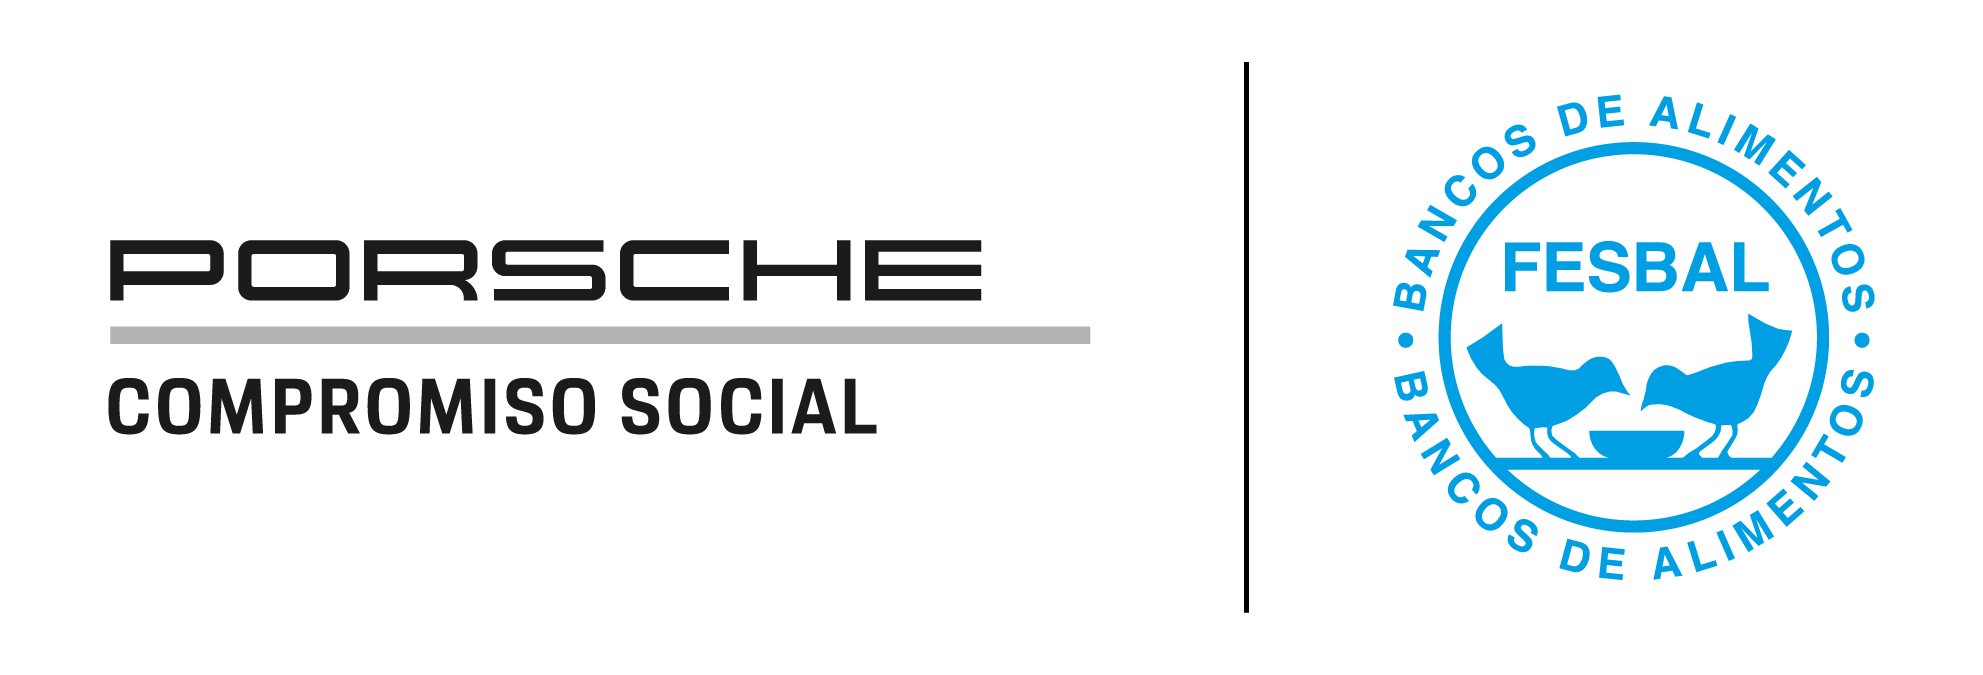 Porsche Compromiso Social, Banco de Alimentos, 2020, Porsche Ibérica